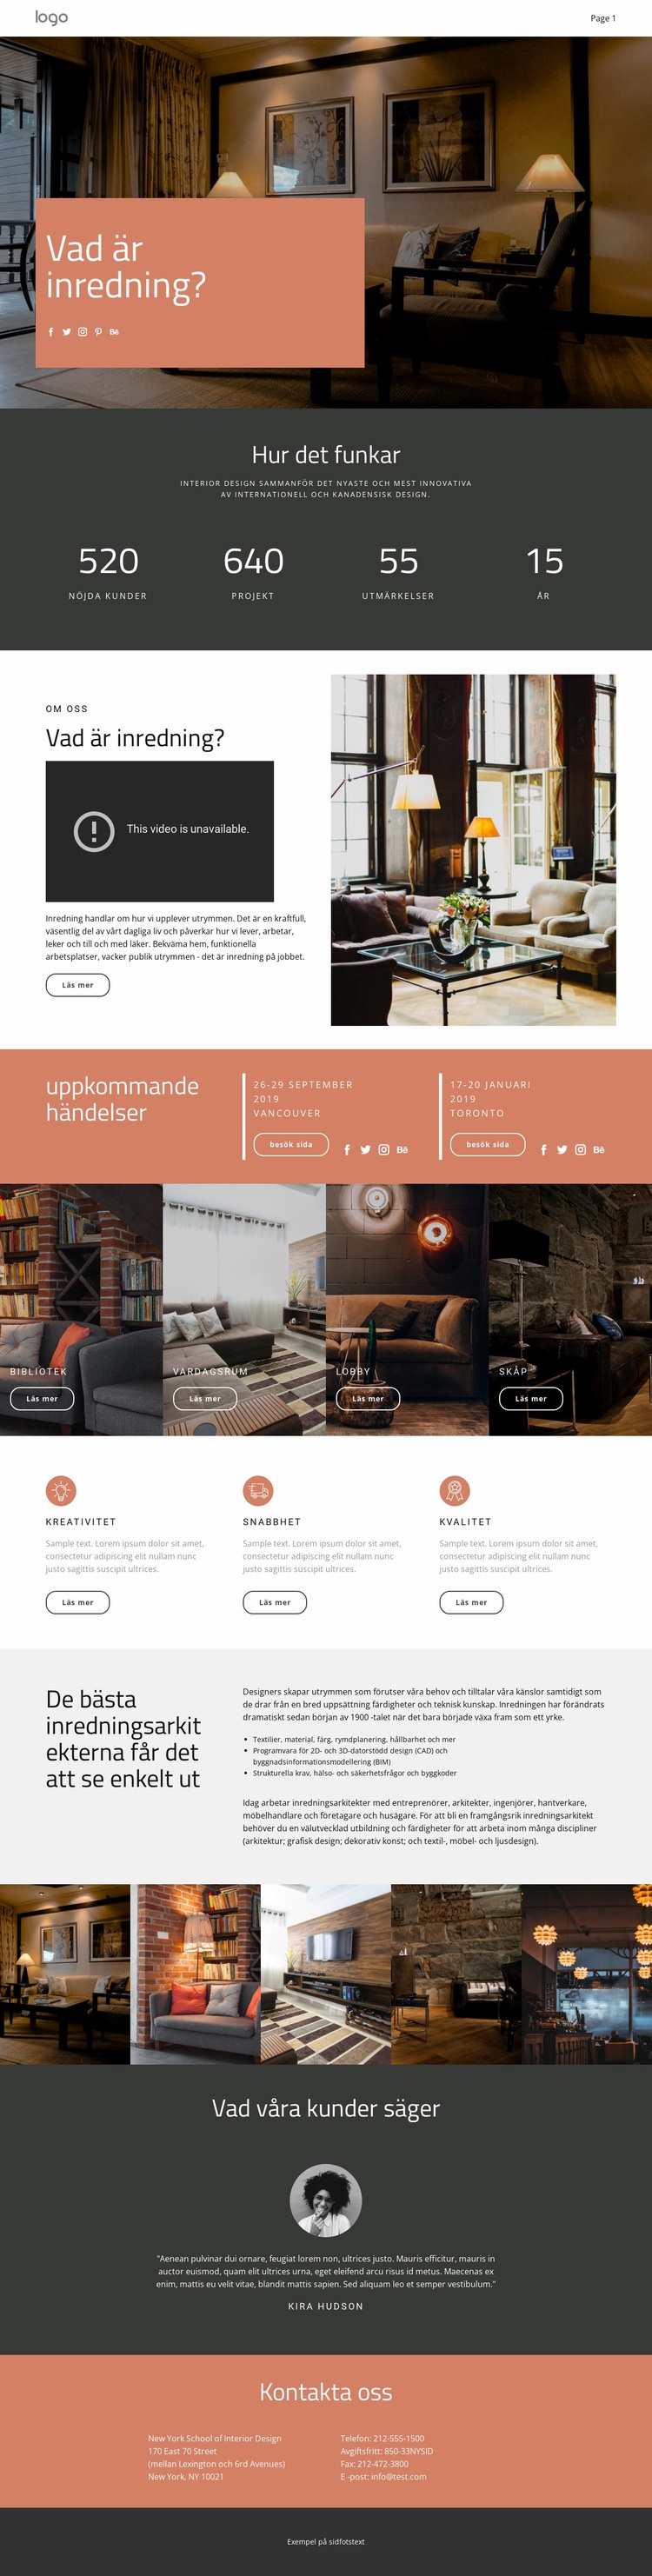 Design av hus och lägenheter WordPress -tema